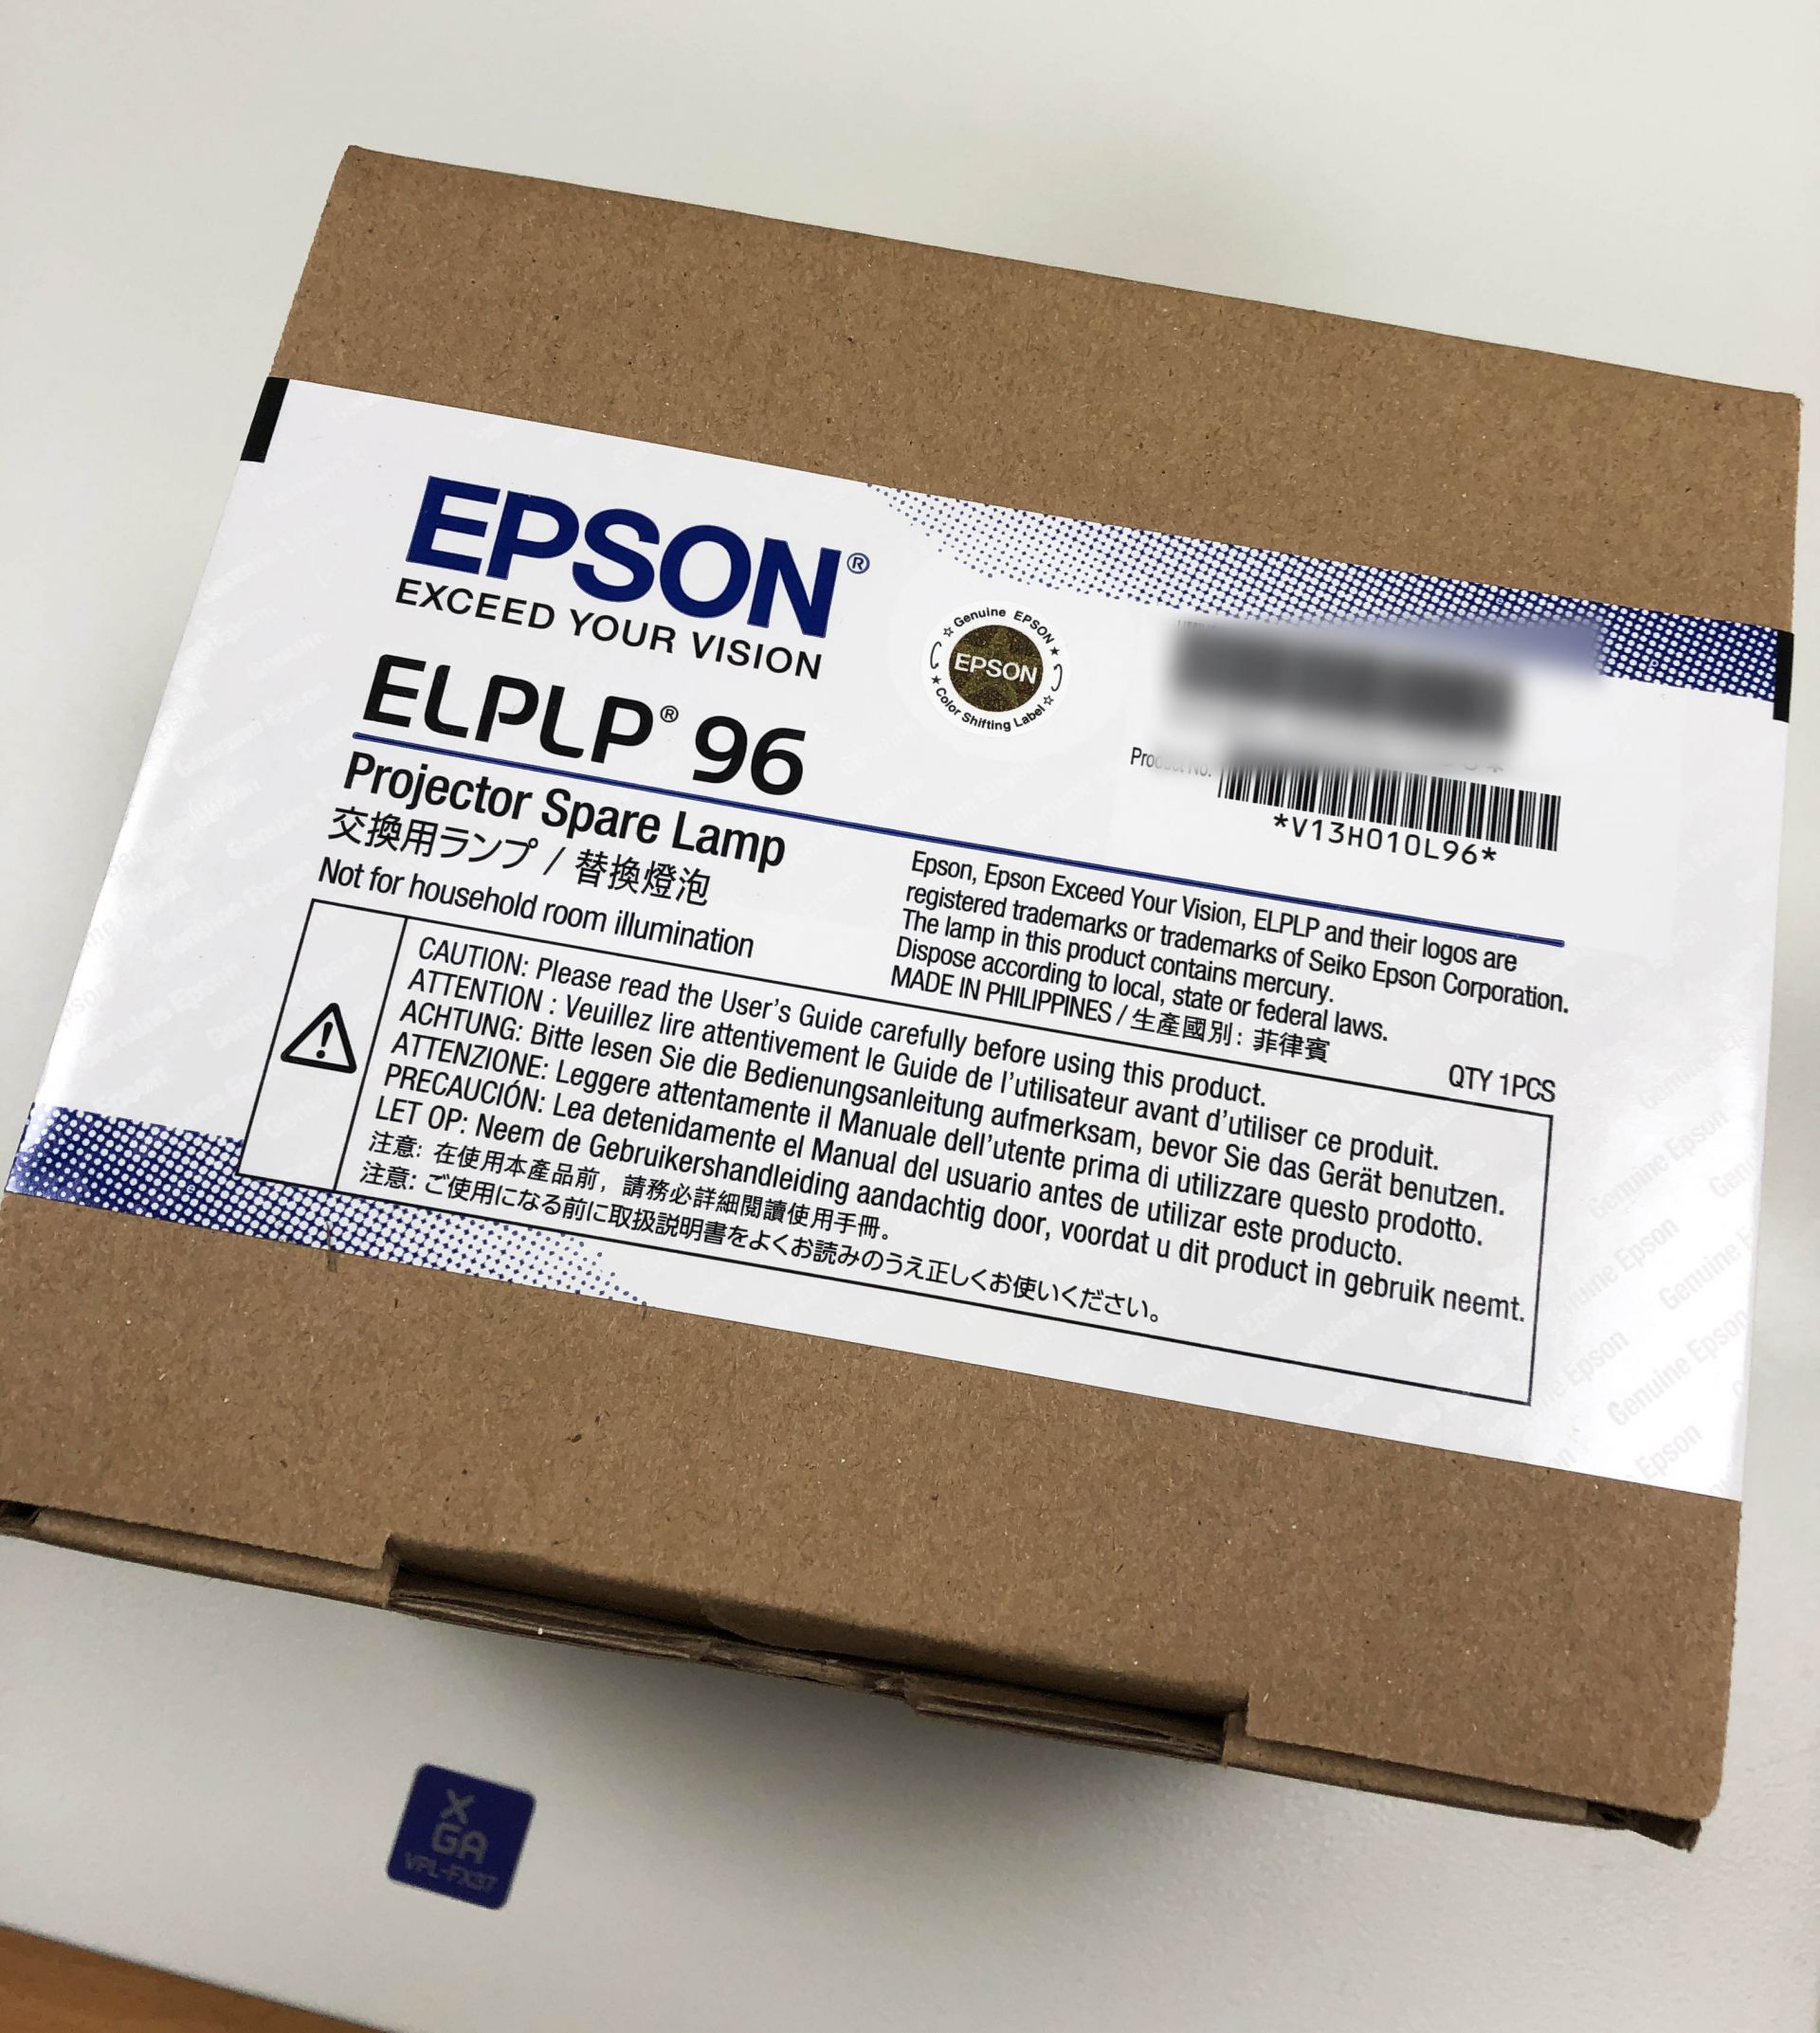 EPSON 投影機原廠燈泡 (官方盒裝) 包裝外觀